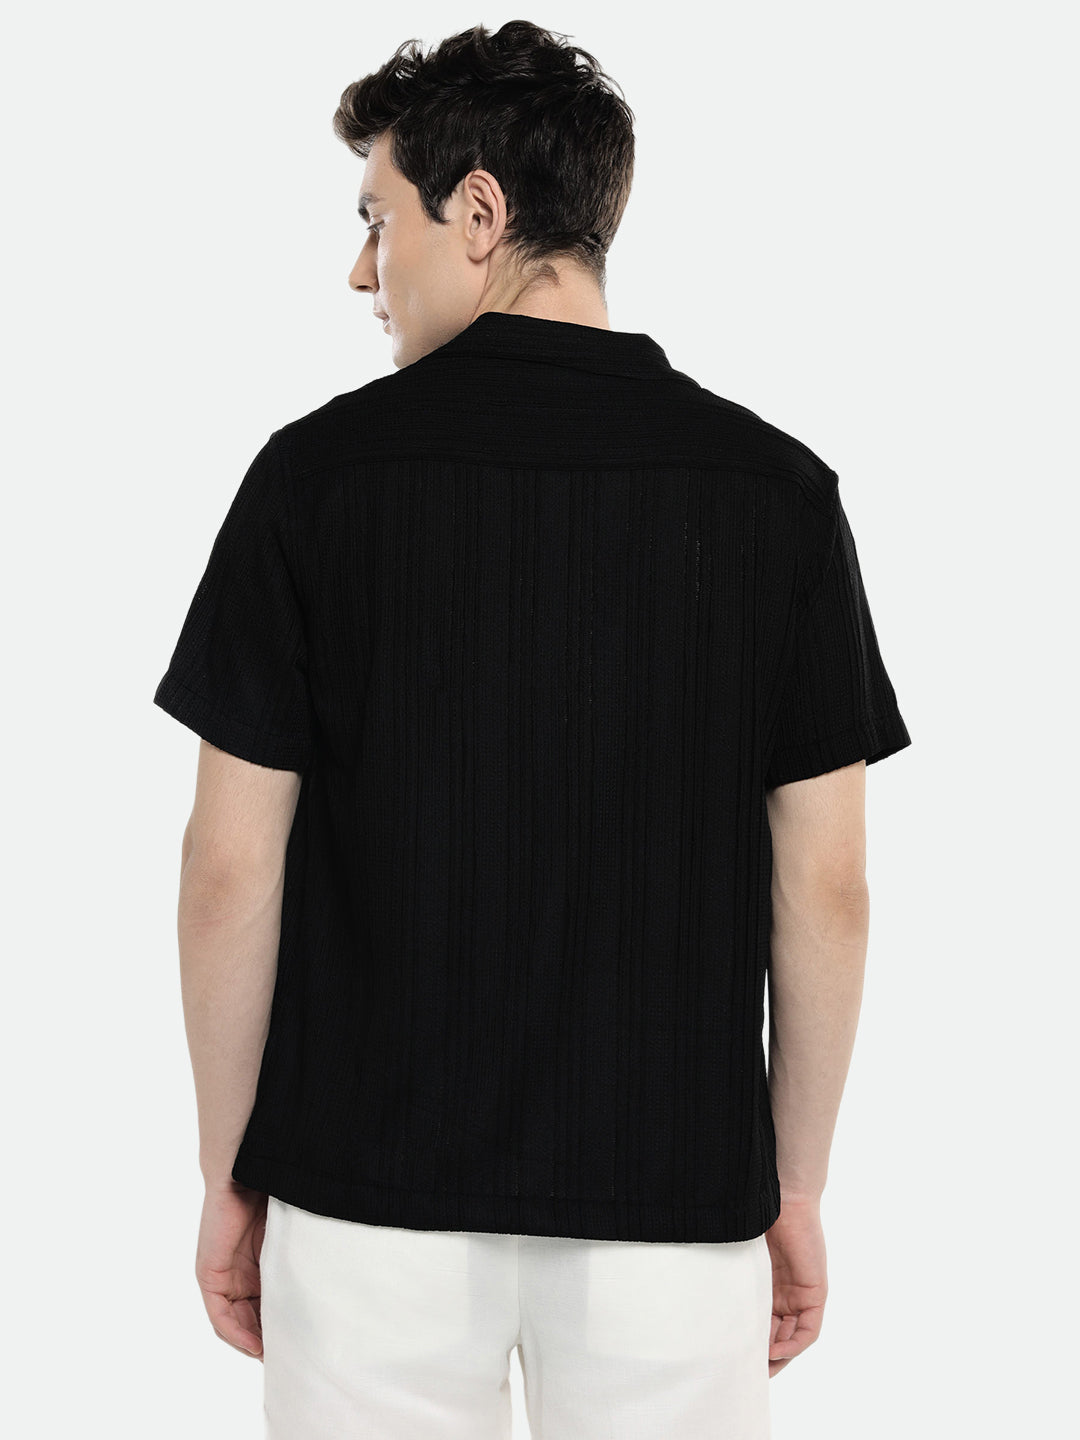 Dennis Lingo Mens's Black Stripes Casual Shirt